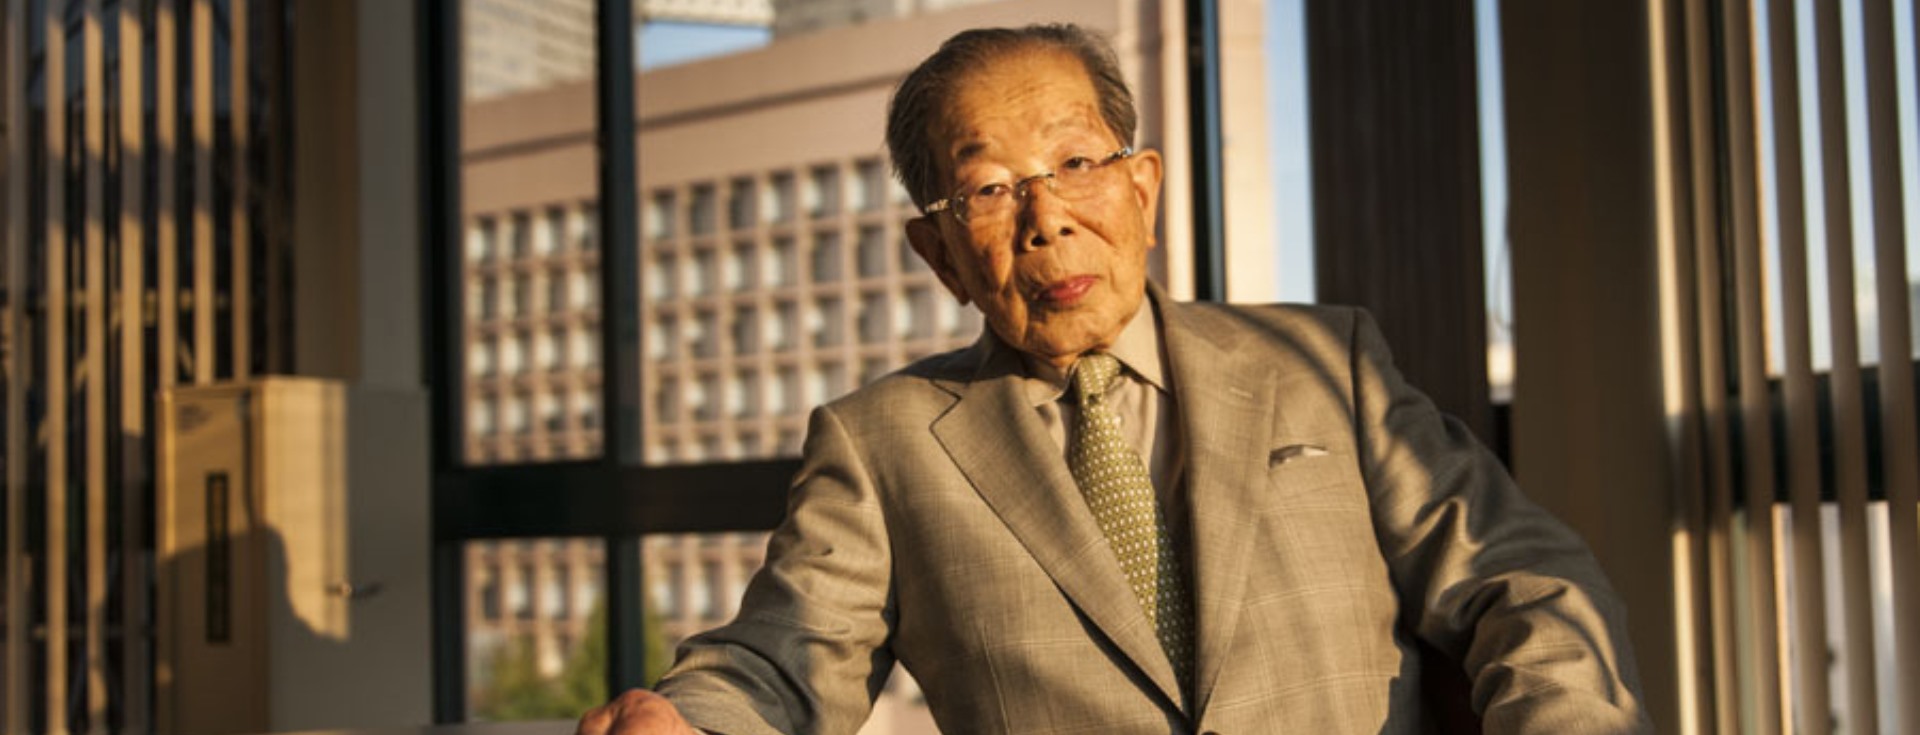 105 Yaşını Gören Japon Doktordan Kaliteli Yaşam Tavsiyeleri